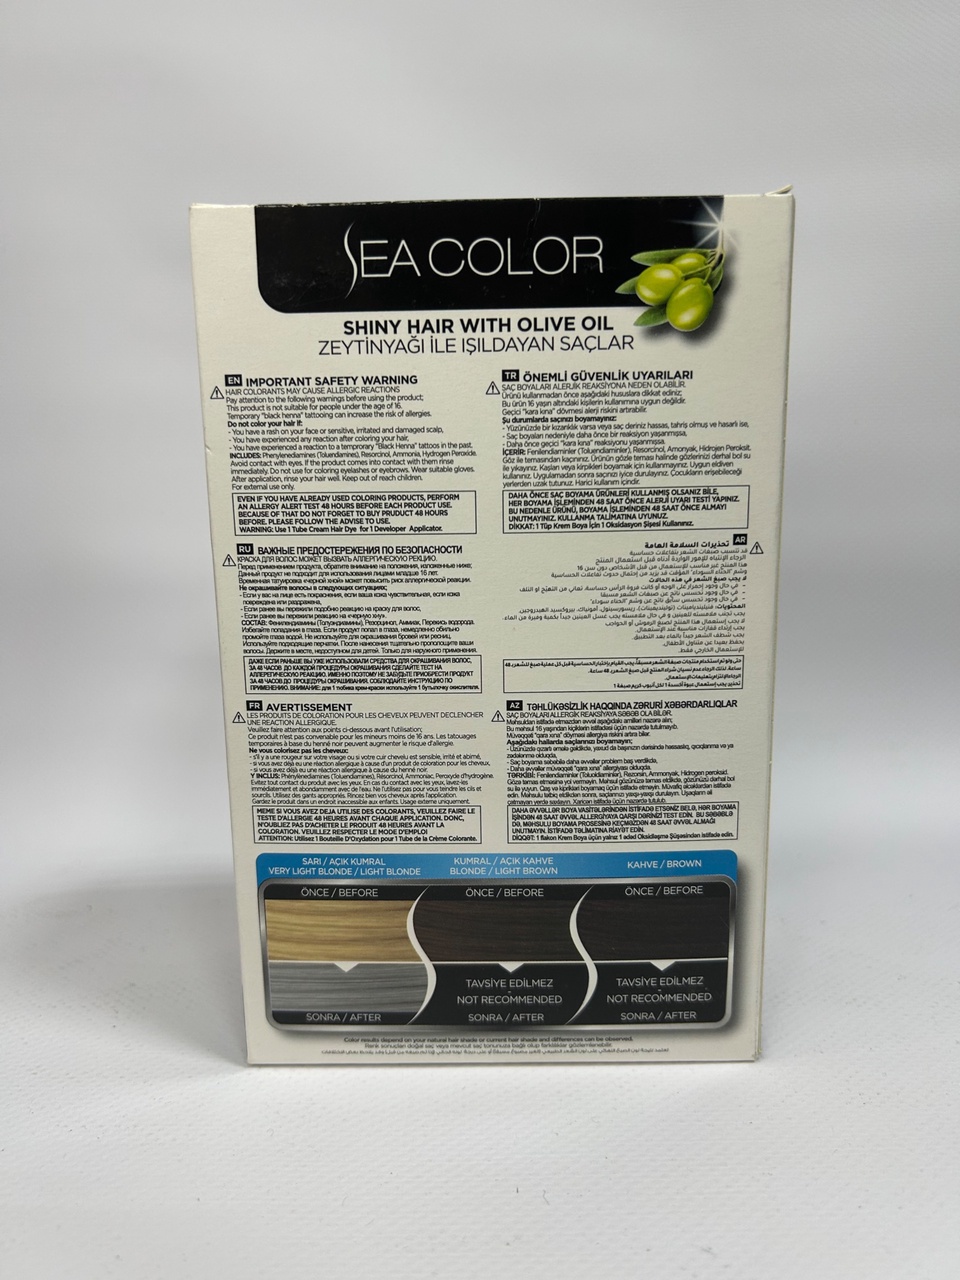 Sea Color 0.01 Краска д/волос «Серебряный» - 300 ₽, заказать онлайн.